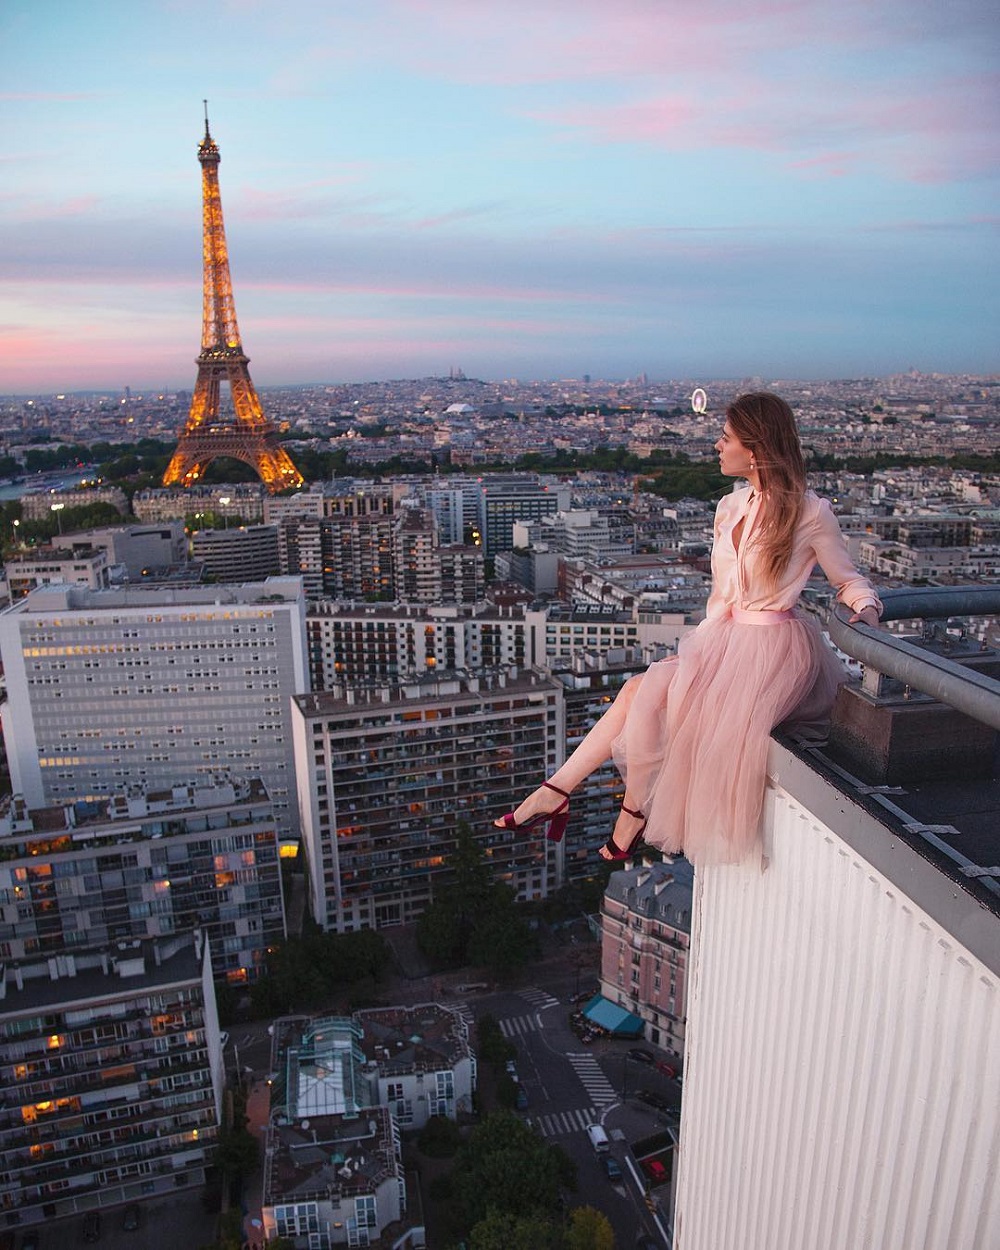 Roofing in Paris